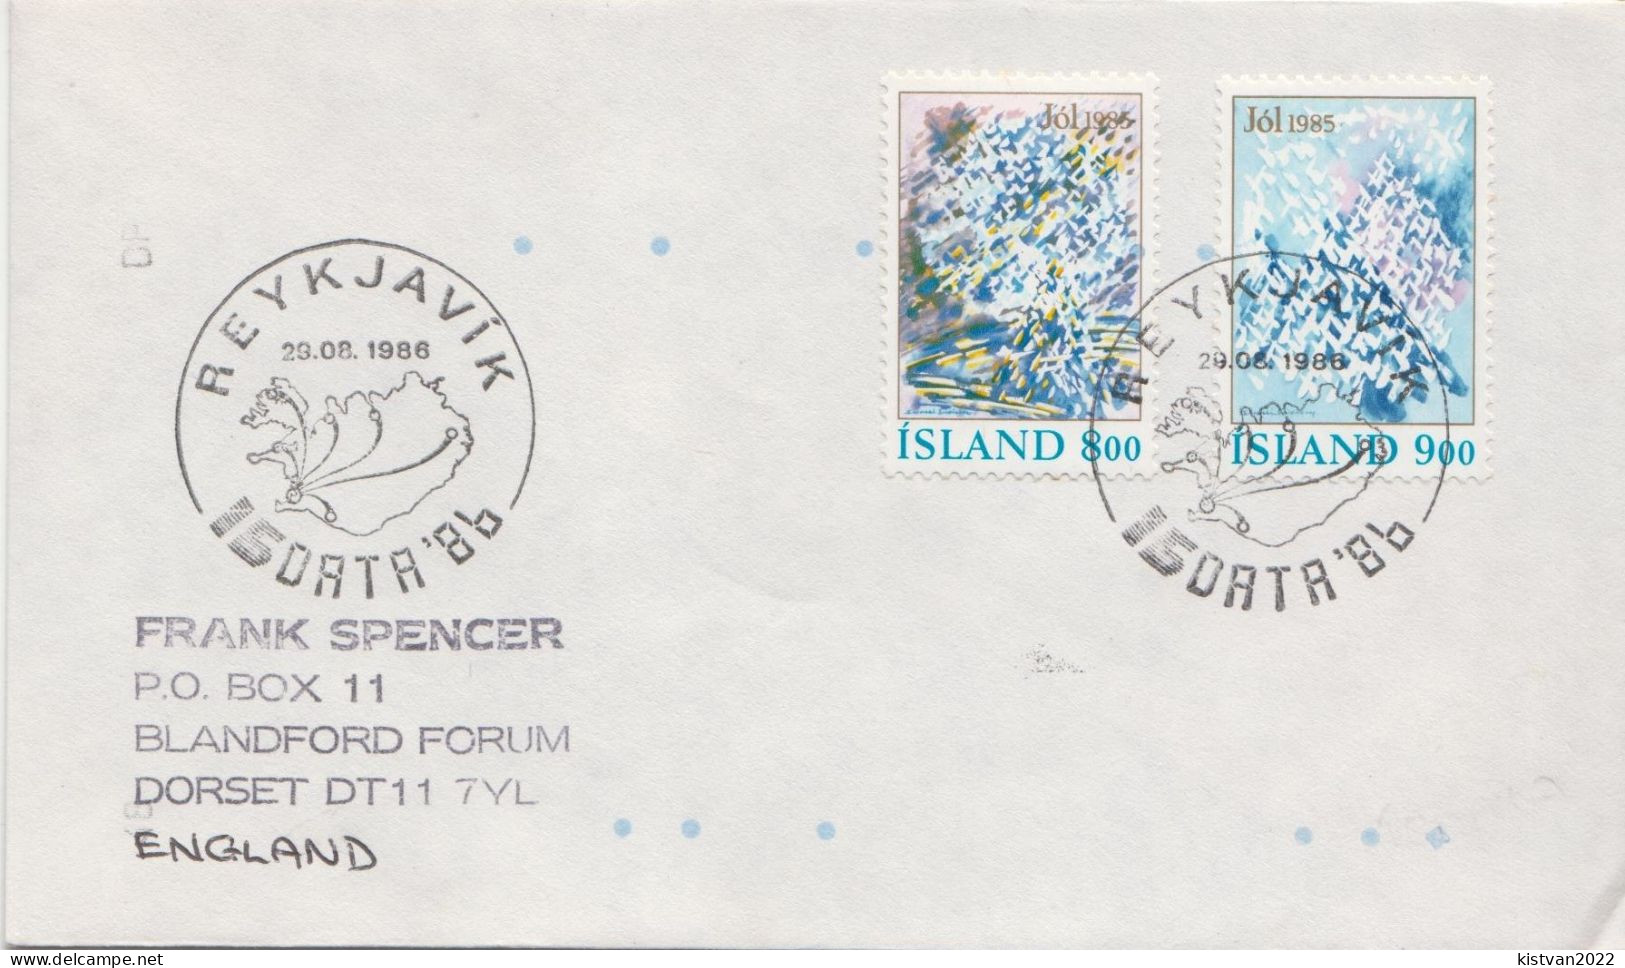 Postal History: Iceland Cover - Briefe U. Dokumente